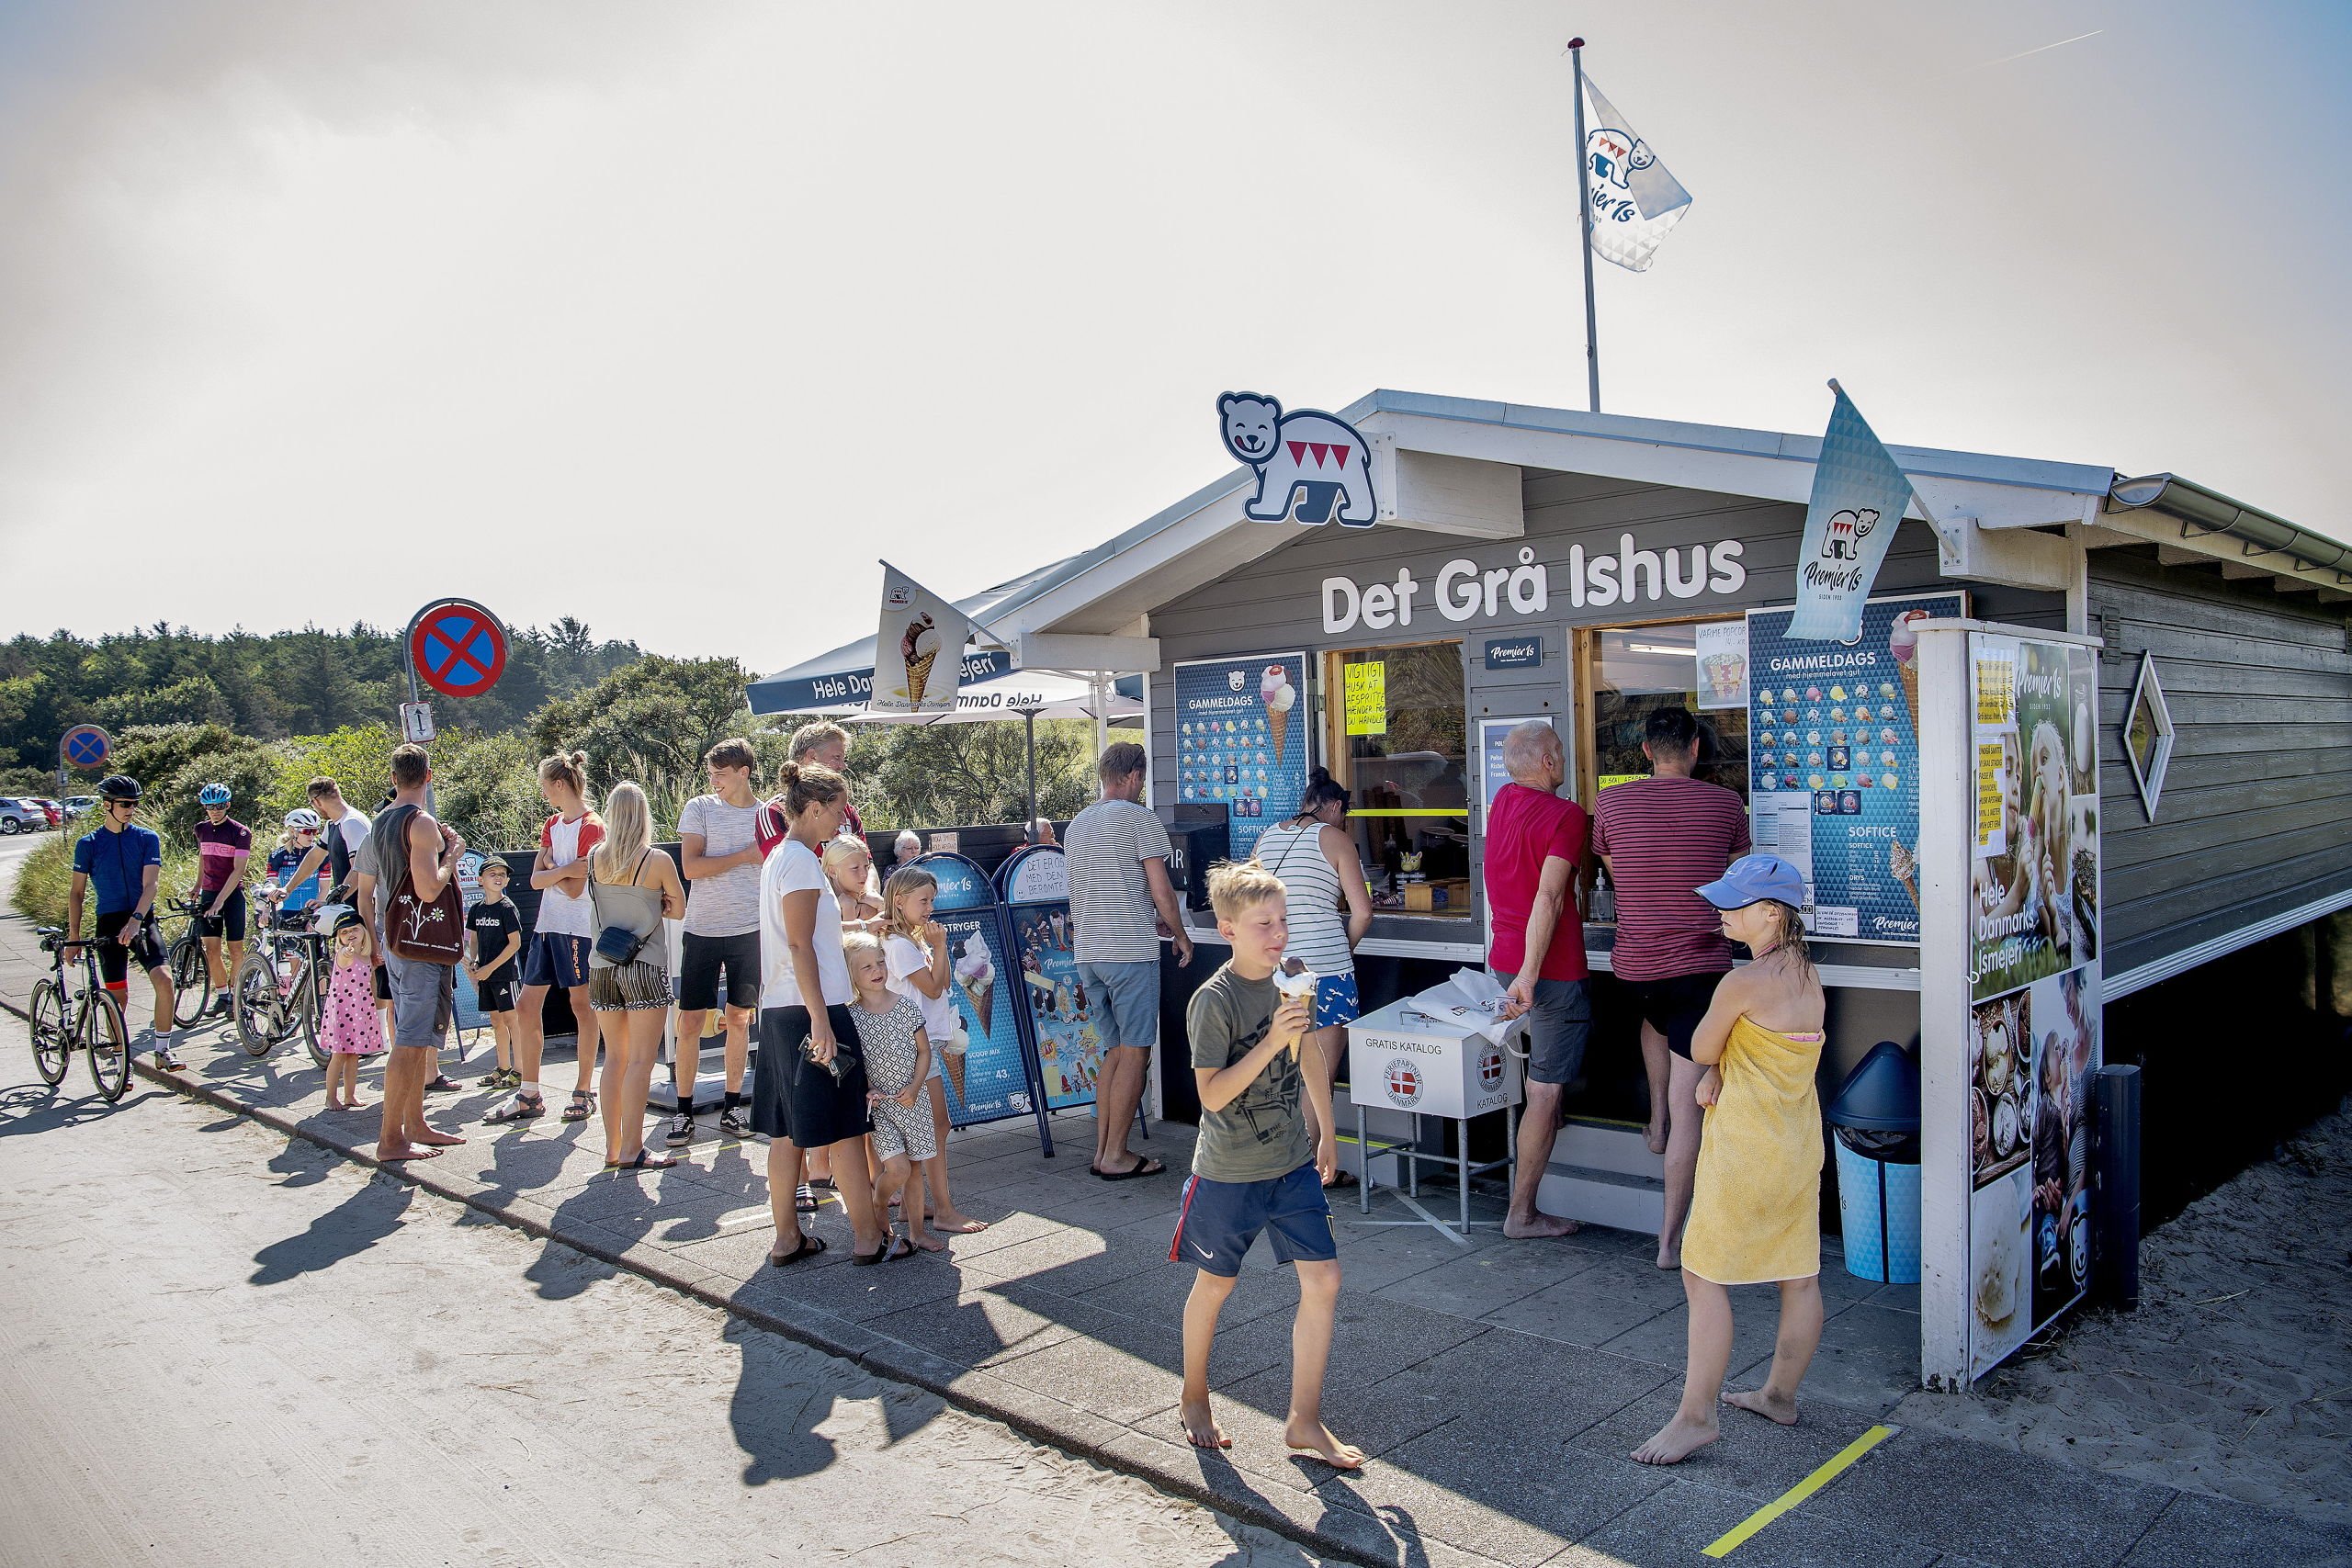 Guf-krigen raser i Tversted: Jettes hemmelighed har fået kunderne til at skifte ishus